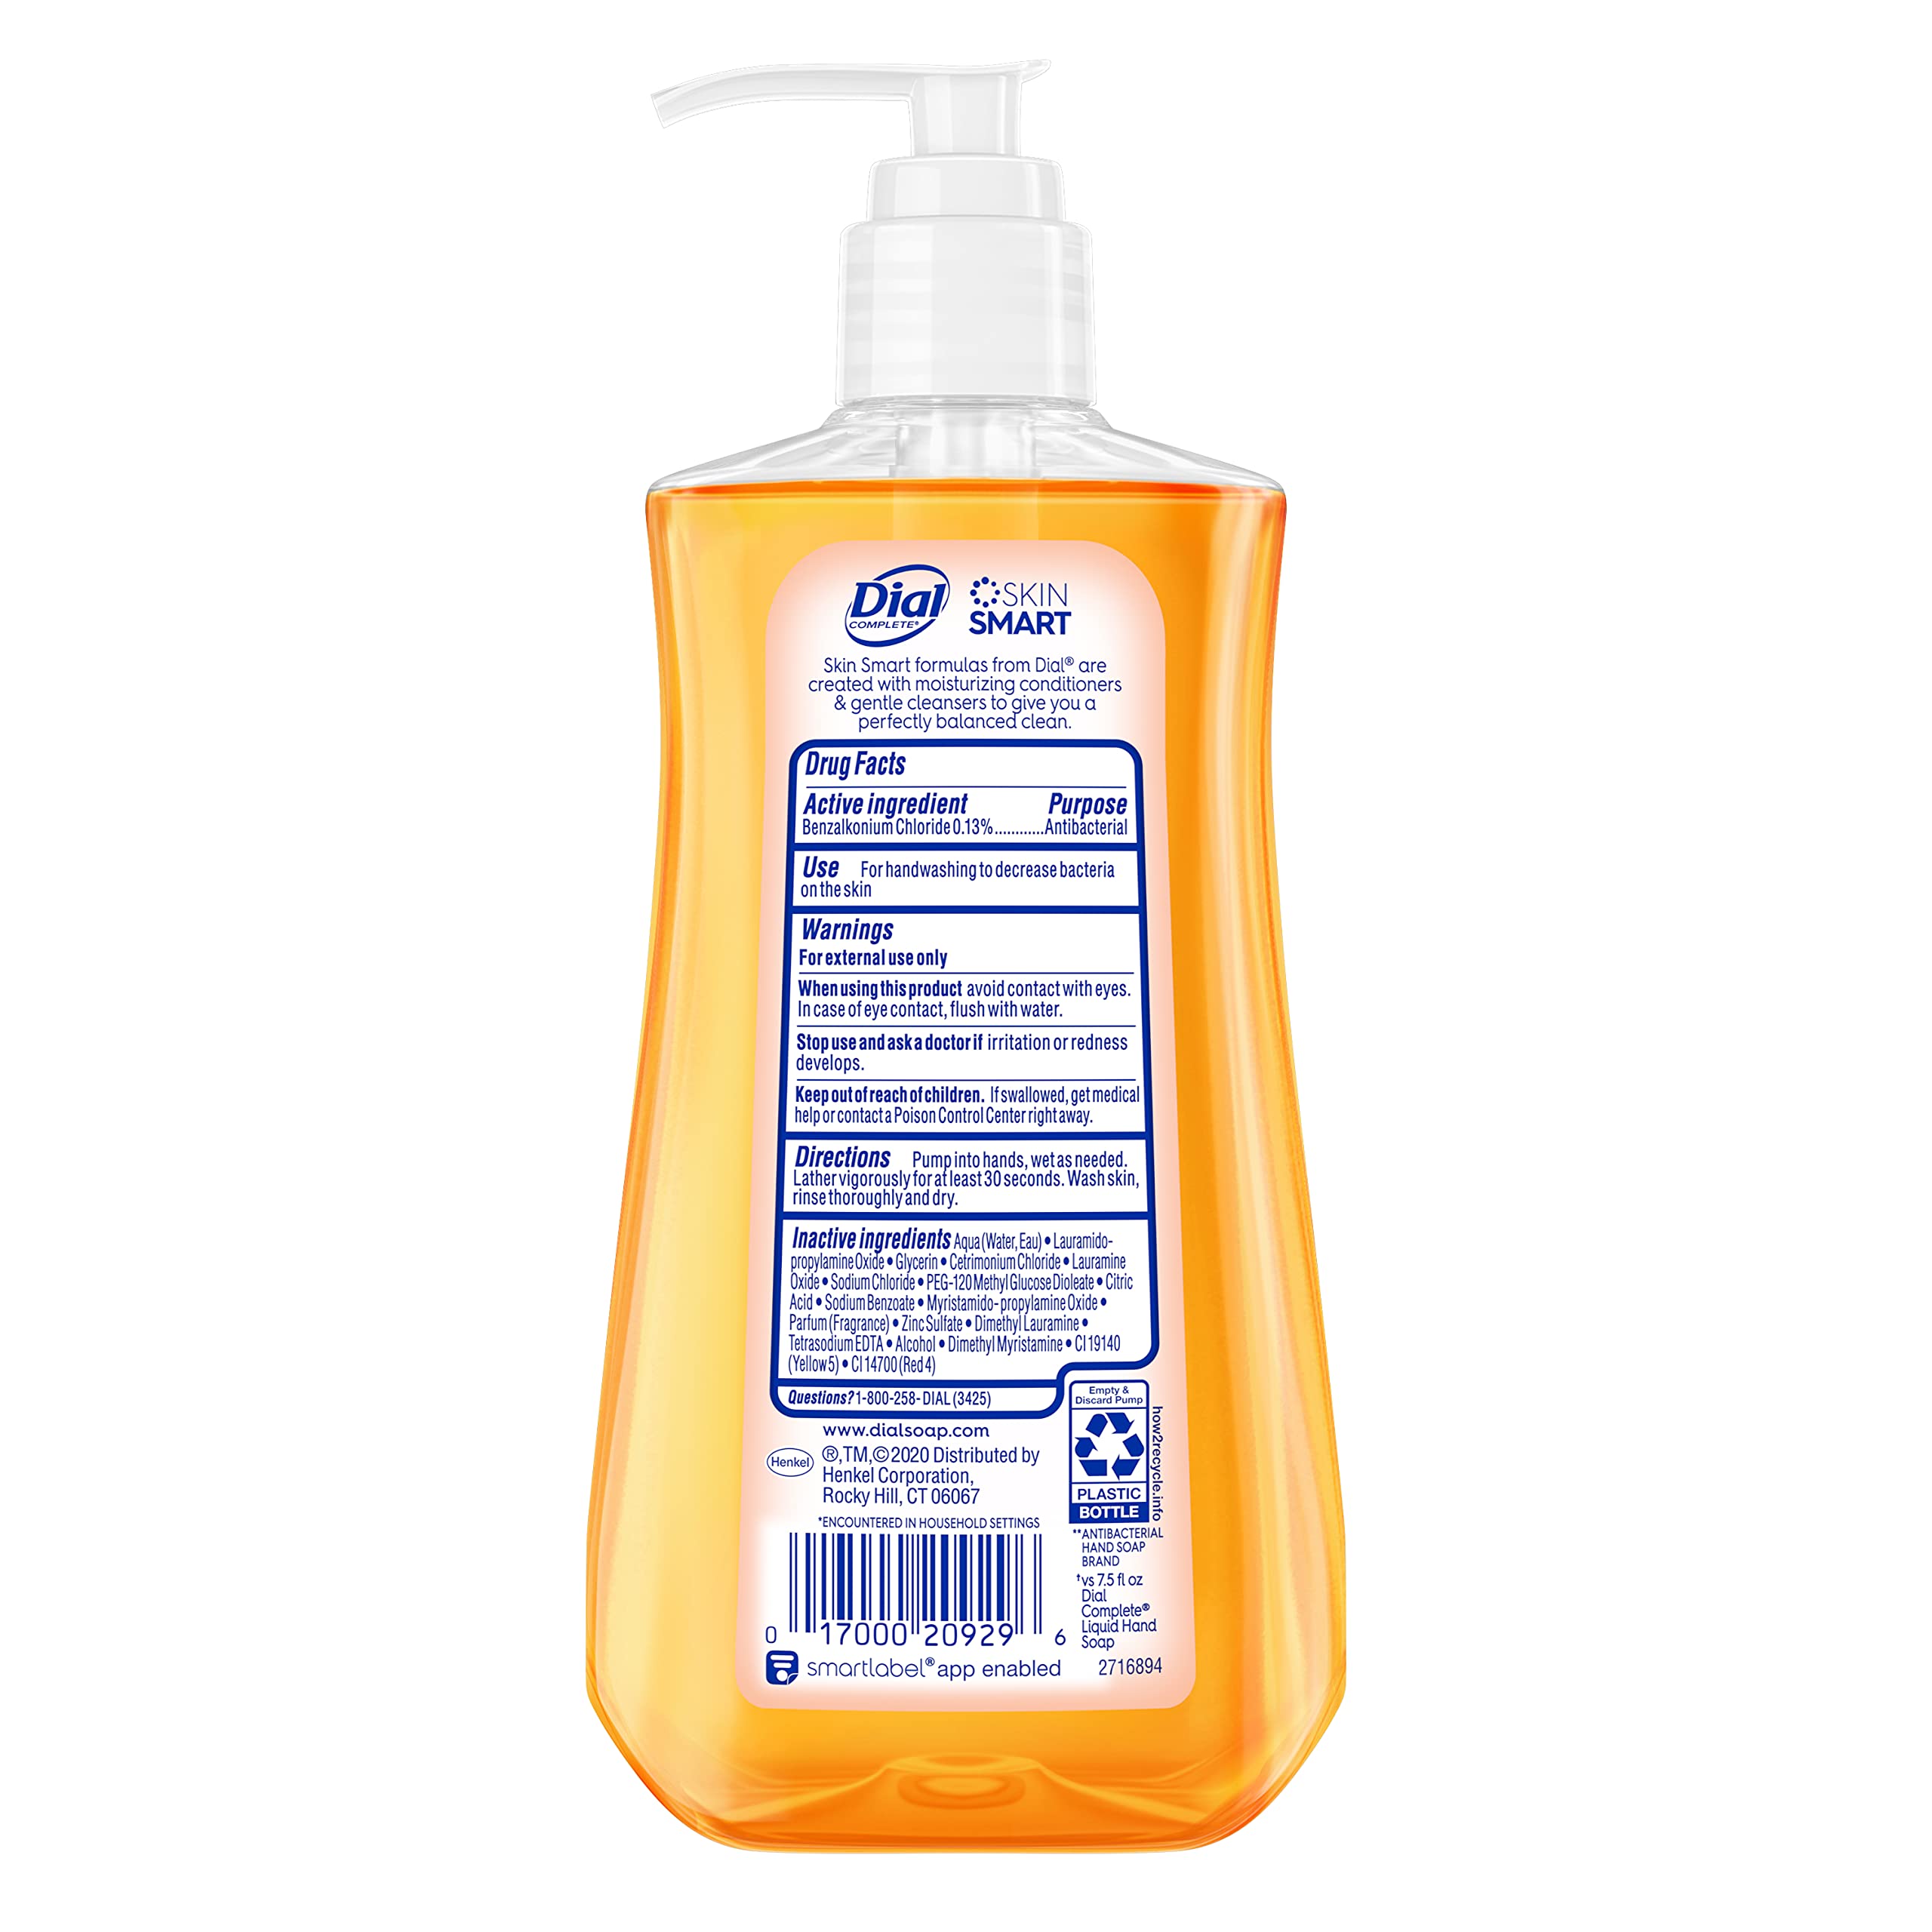 Dial Antibacterial Liquid Hand Soap, Gold, 11 Fl Oz